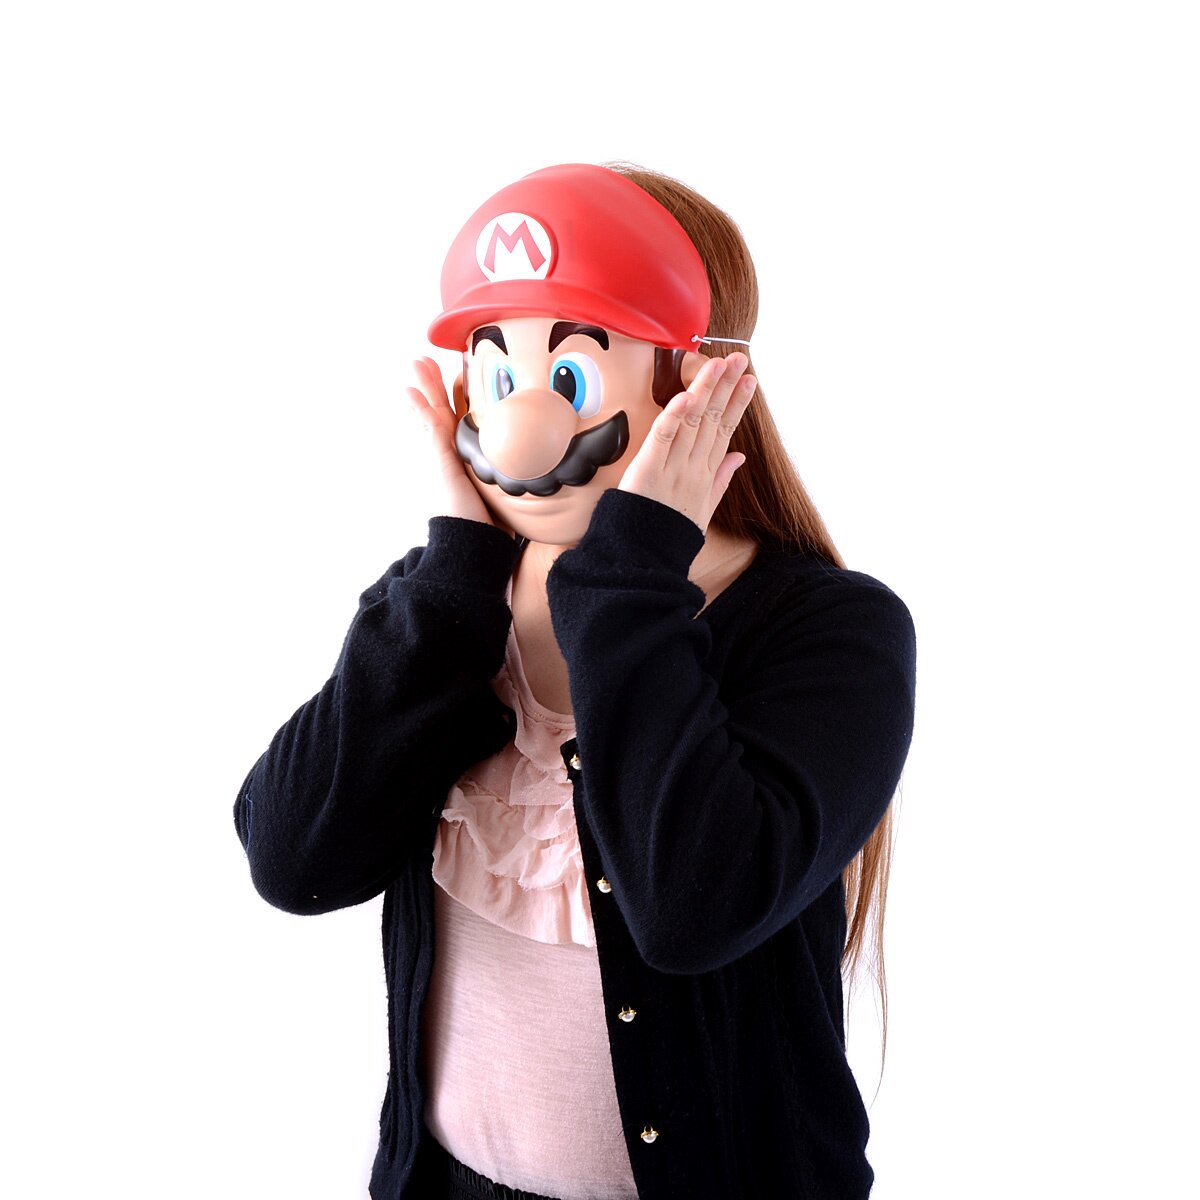 Super Mario Bros. Mario Costume Mask: Nintendo - Tokyo Otaku Mode (TOM)